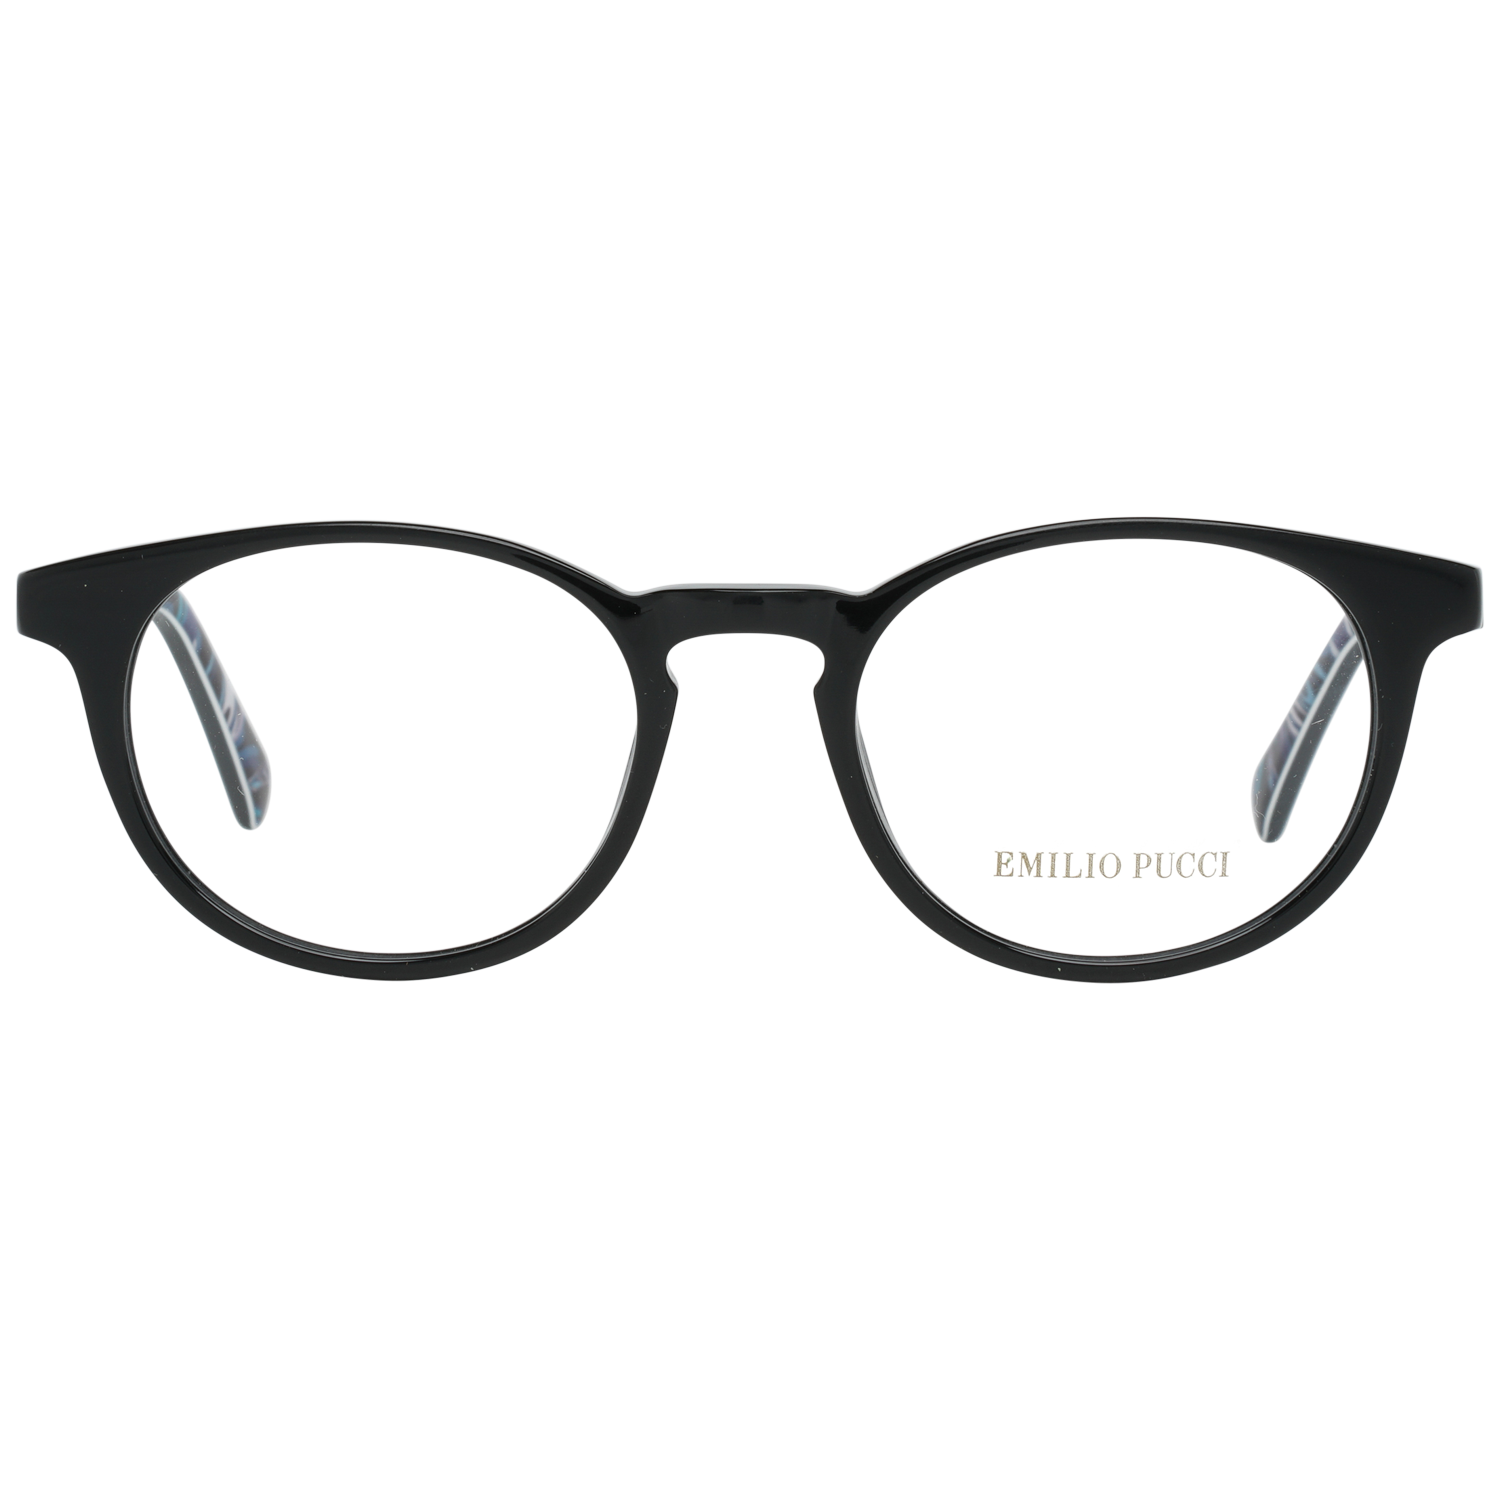 Emilio Pucci Frames Emilio Pucci Optical Frame EP5018 001 48 Eyeglasses Eyewear UK USA Australia 